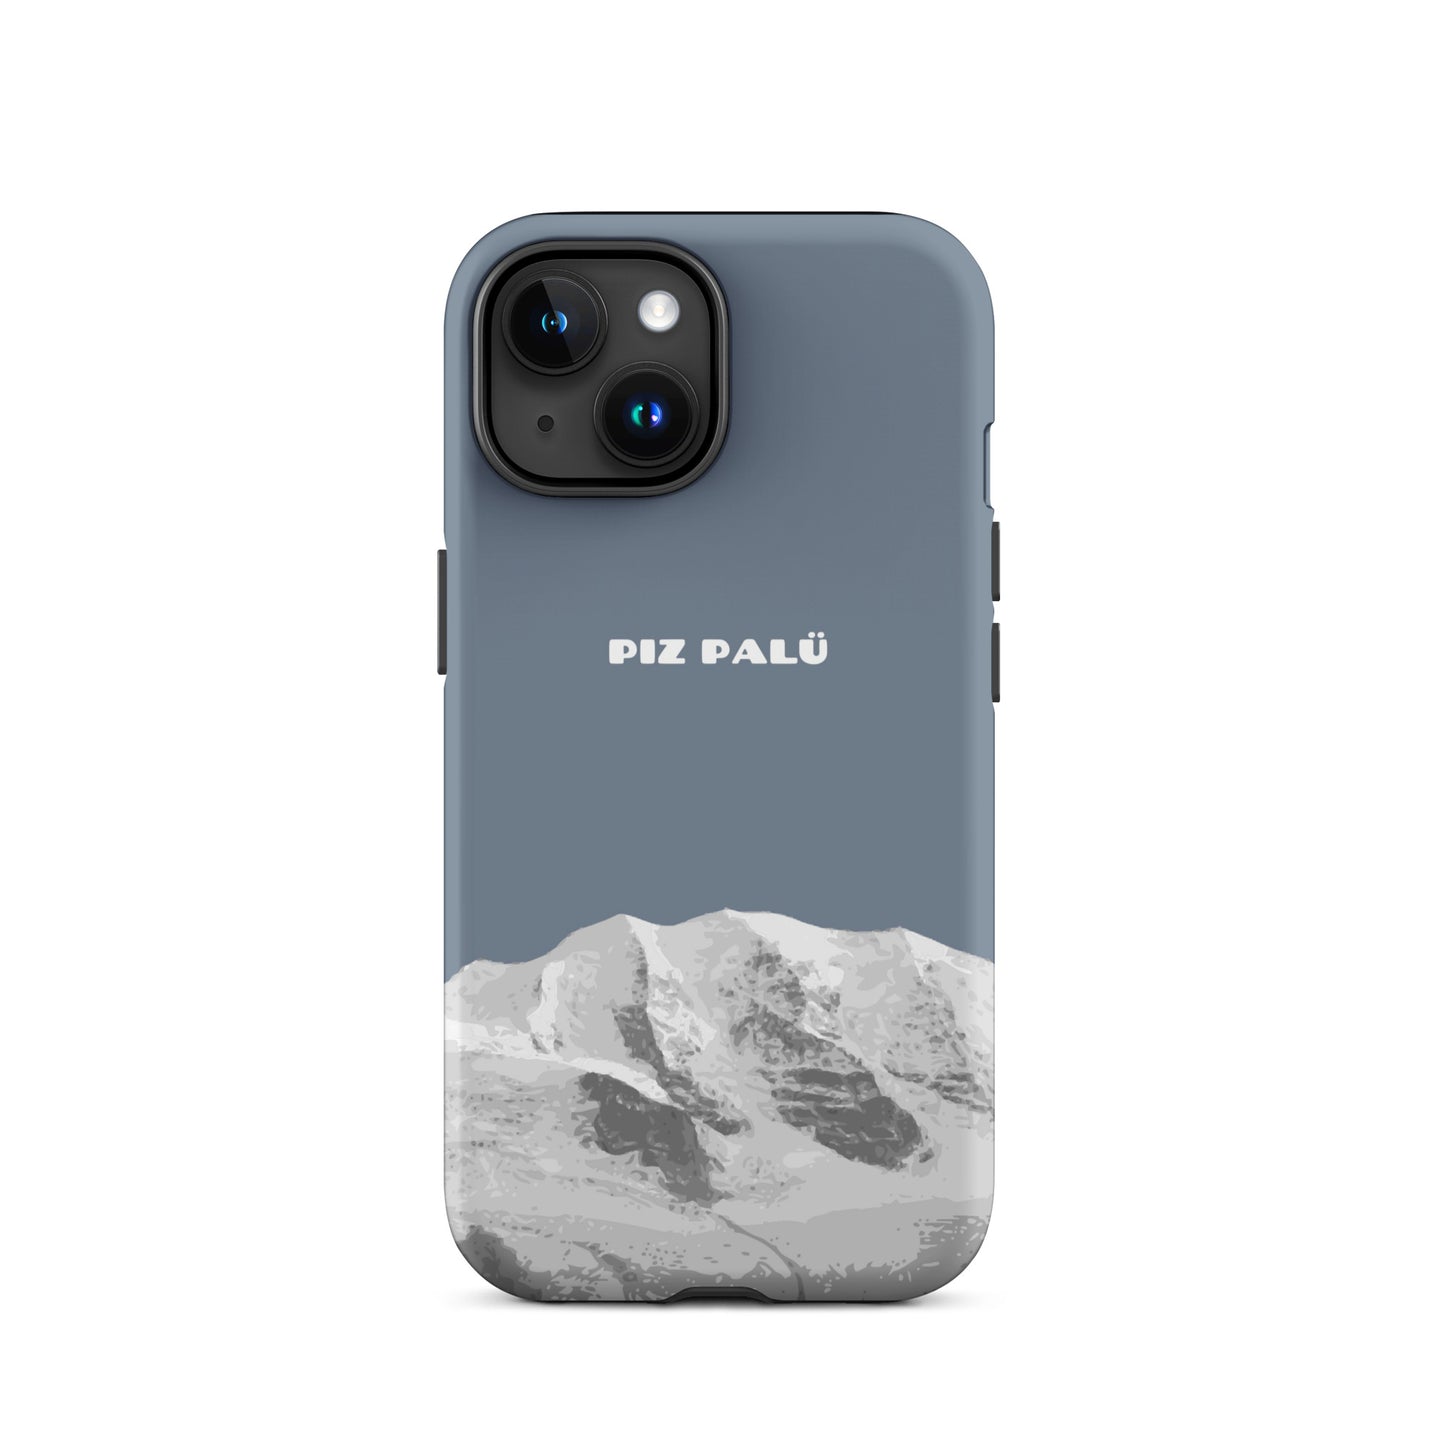 Hülle für das iPhone 15 von Apple in der Farbe Schiefergrau, dass den Piz Palü in Graubünden zeigt.